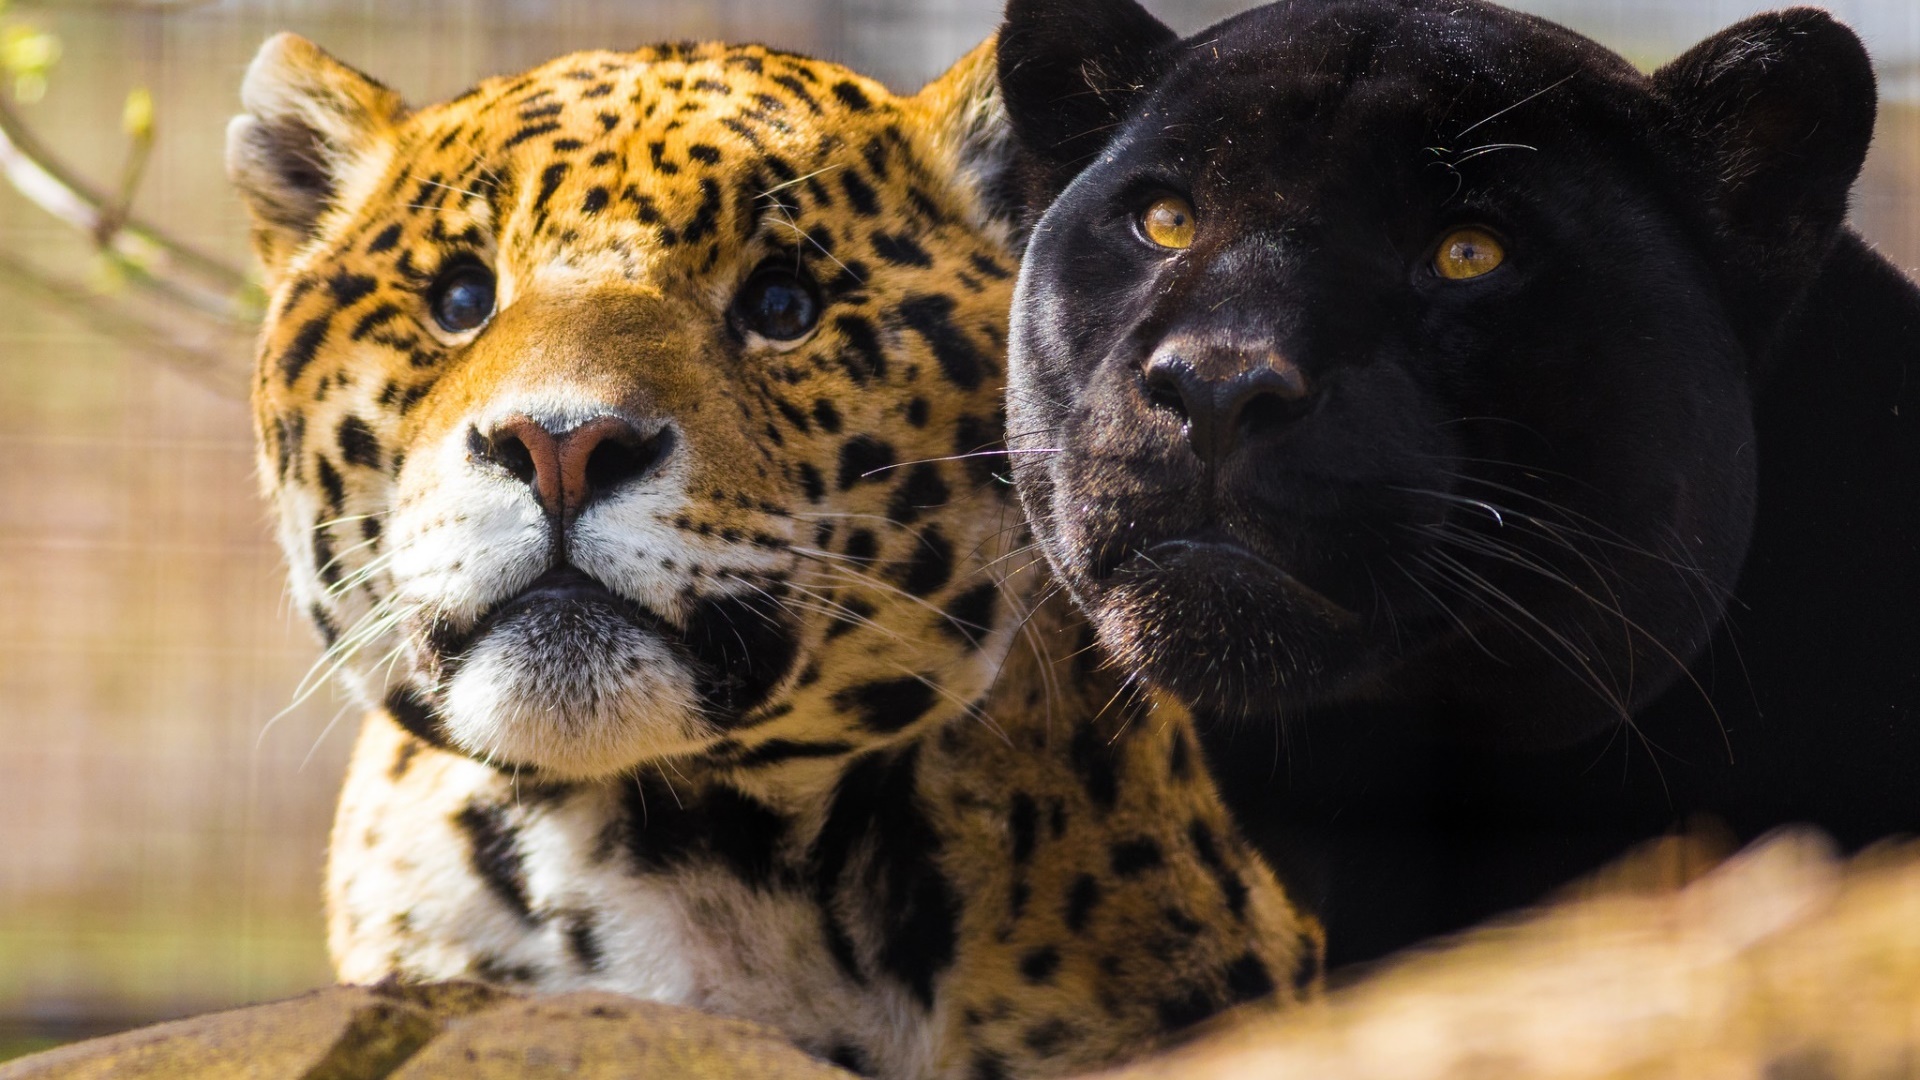 General 1920x1080 animals big cats jaguars panthers